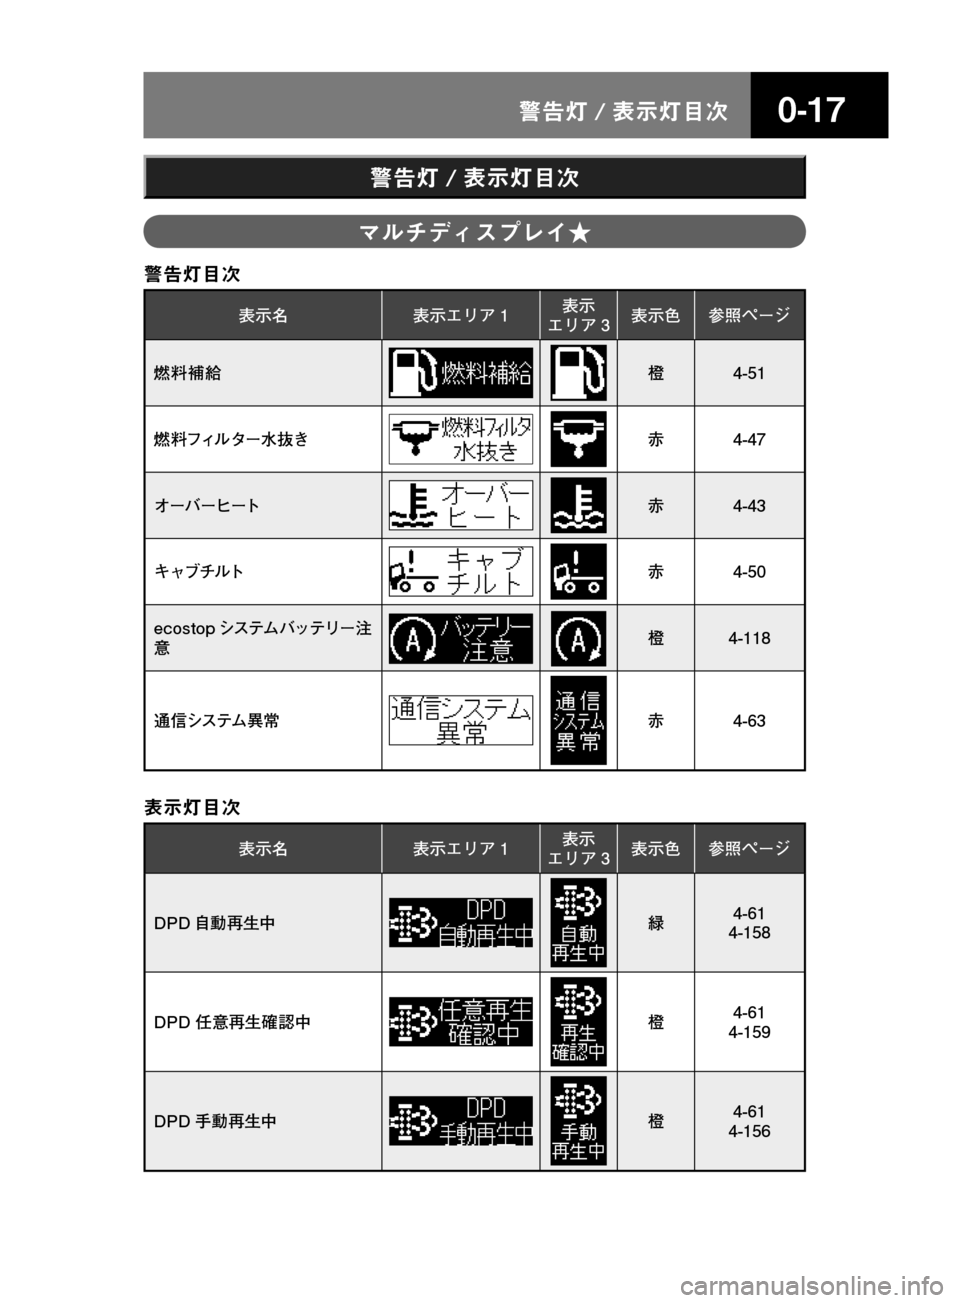 MAZDA MODEL TITAN 2013  タイタン｜取扱説明書 (in Japanese) ����/n � 
